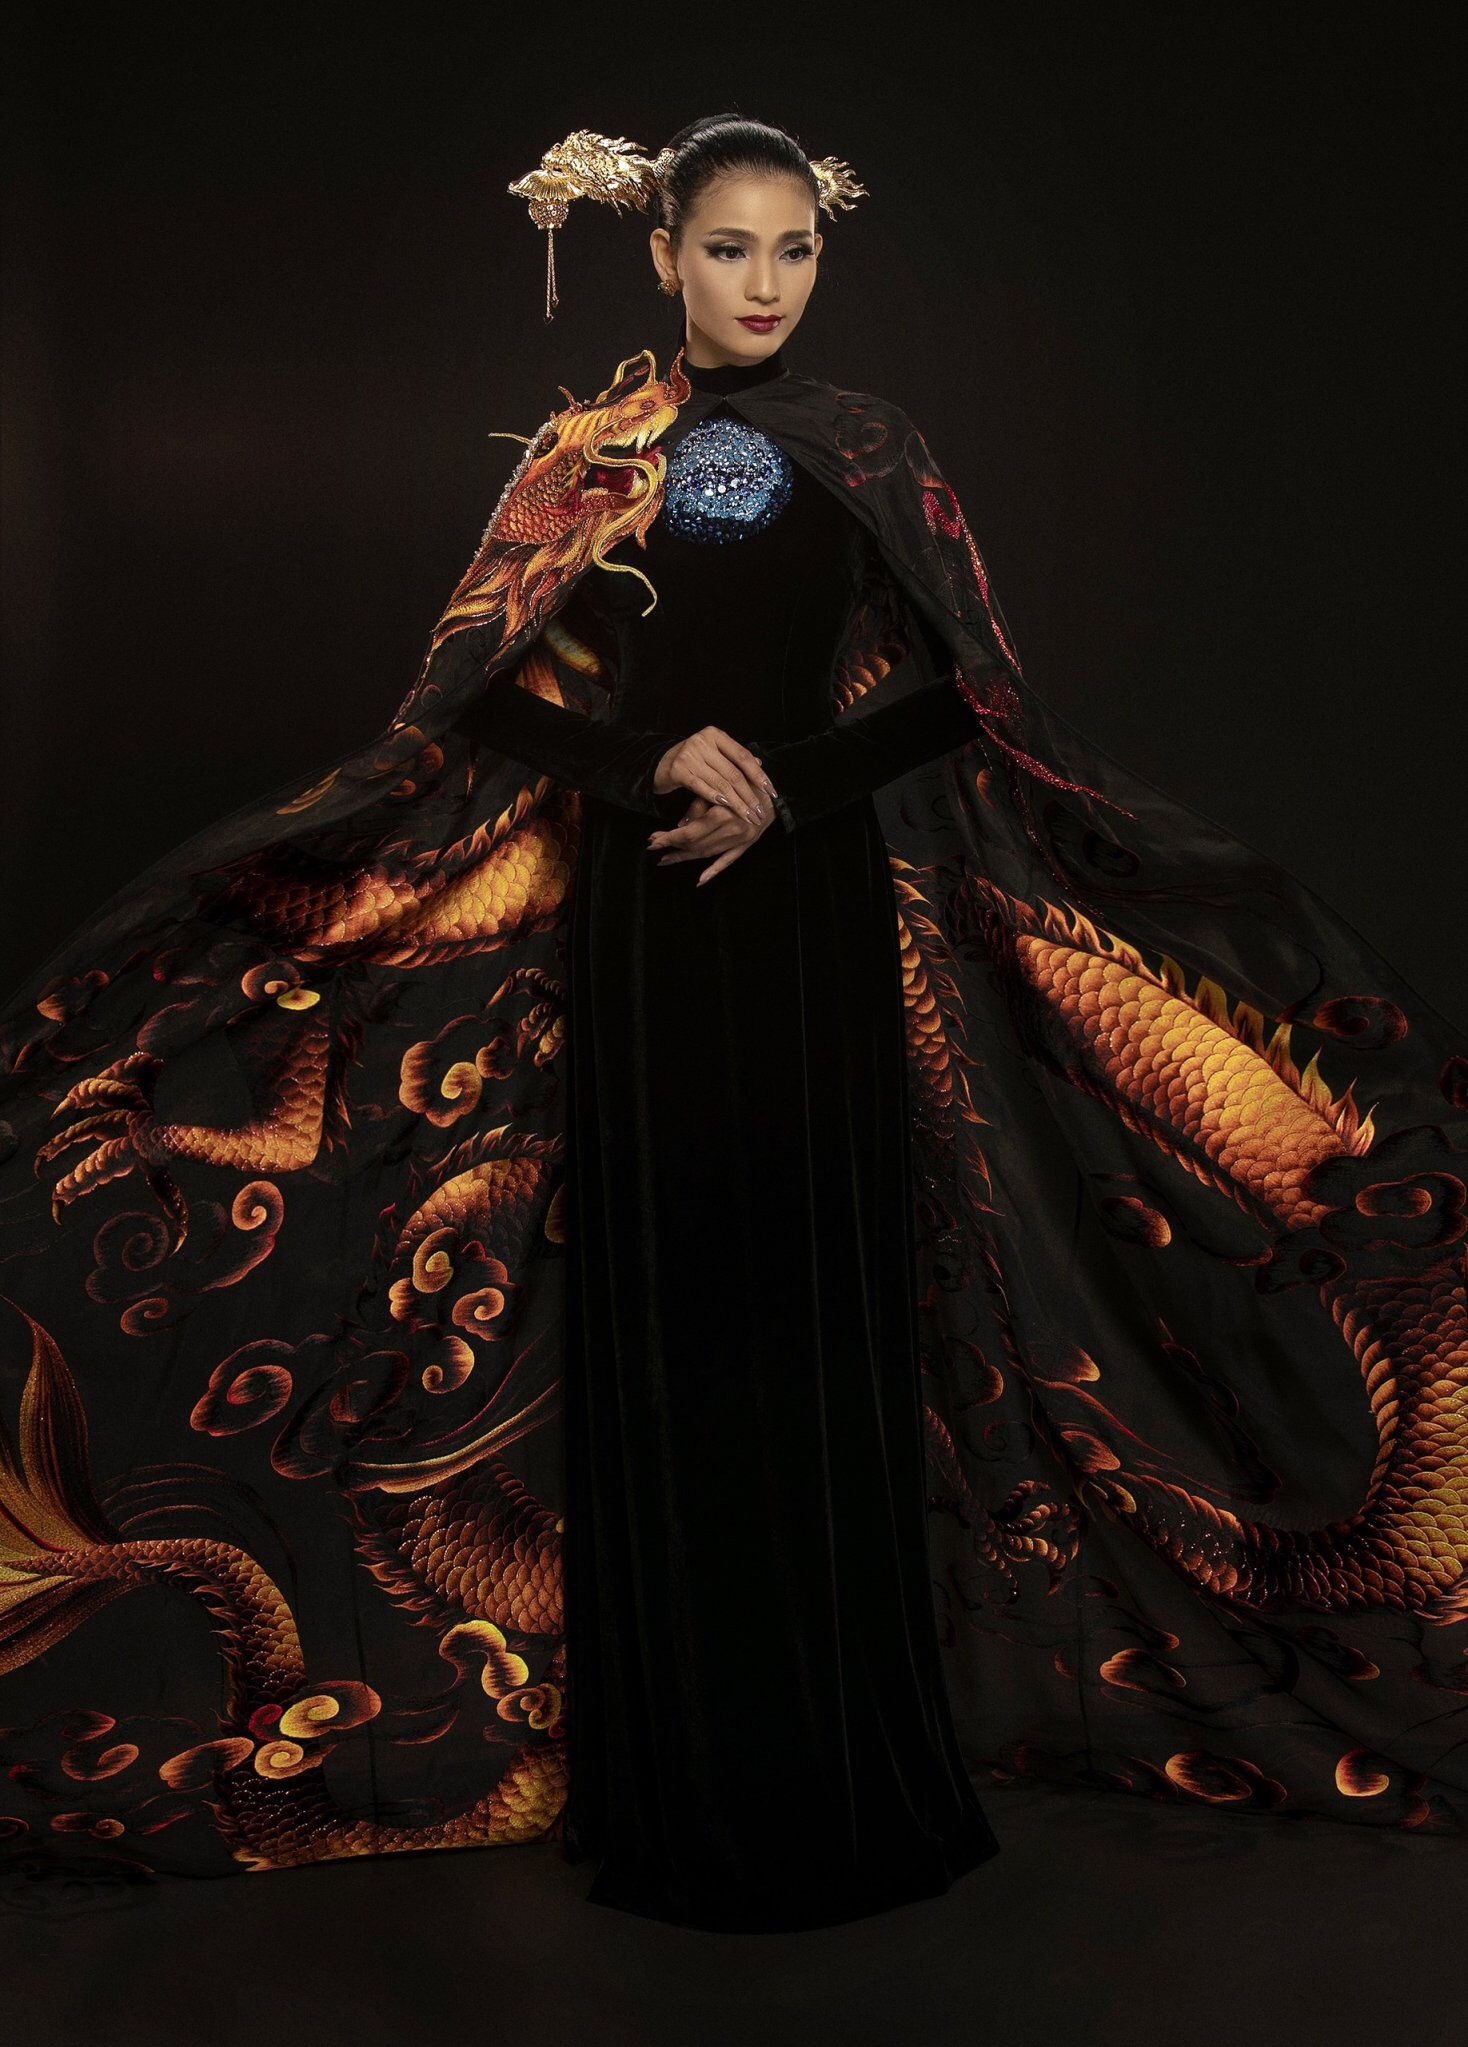 Cận cảnh bộ áo dài giúp Trương Thị May gây ấn tượng sau màn xuất hiện phô phang của Ngọc Trinh tại Cannes 2019  - Ảnh 1.